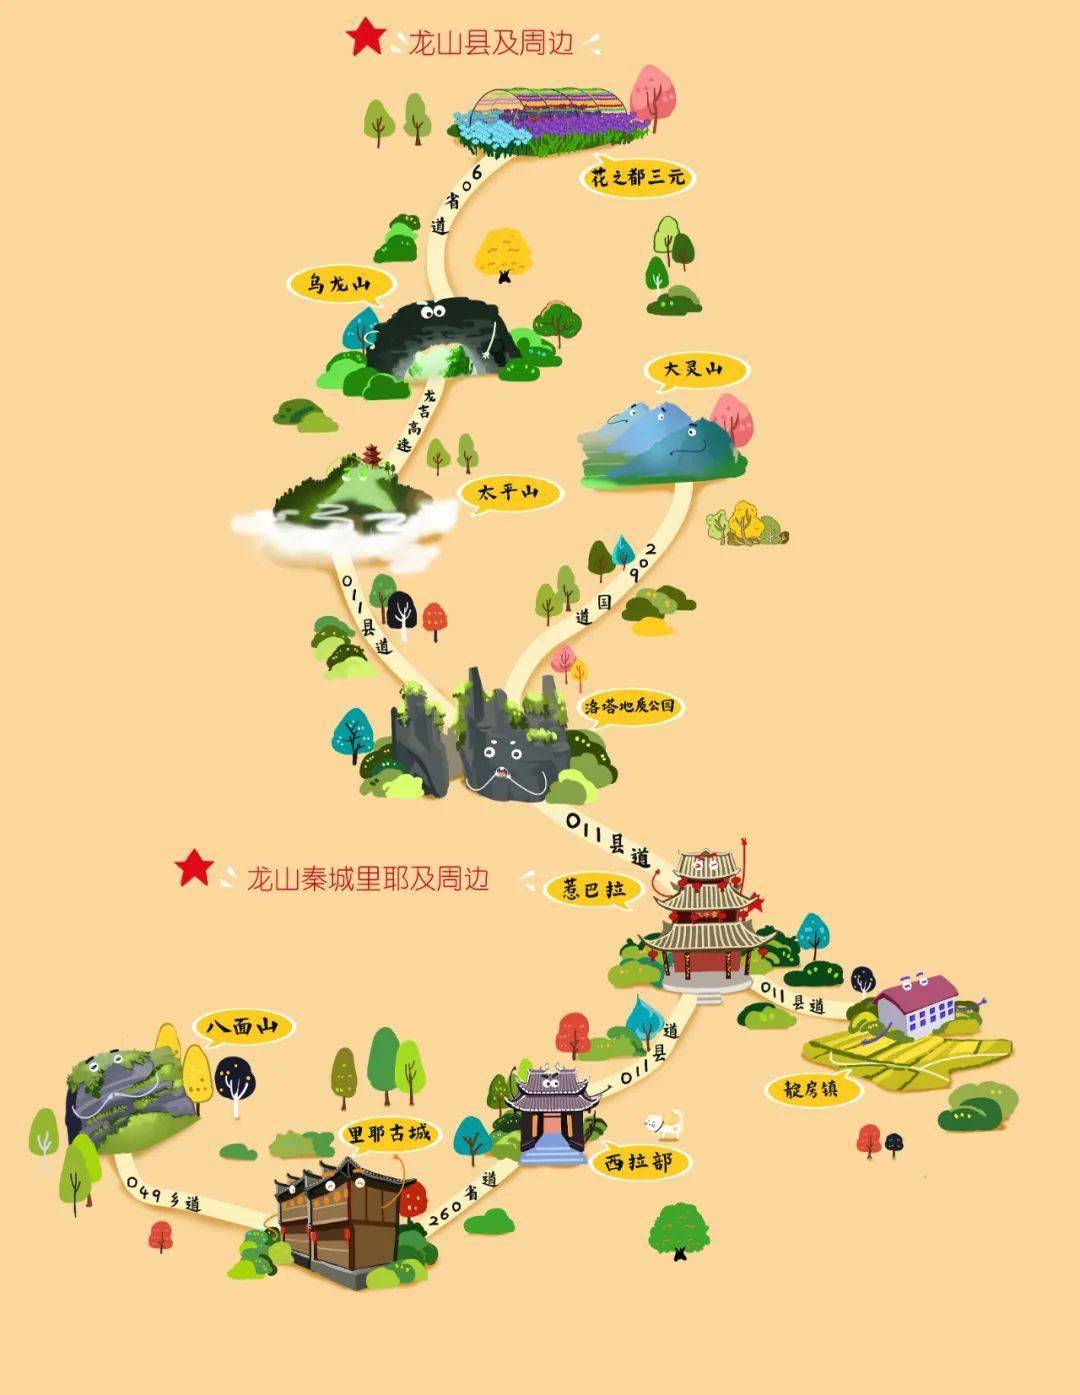 湘西——"休闲度假天堂"美得吓人!这份各县市手绘旅游地图,赶紧收好